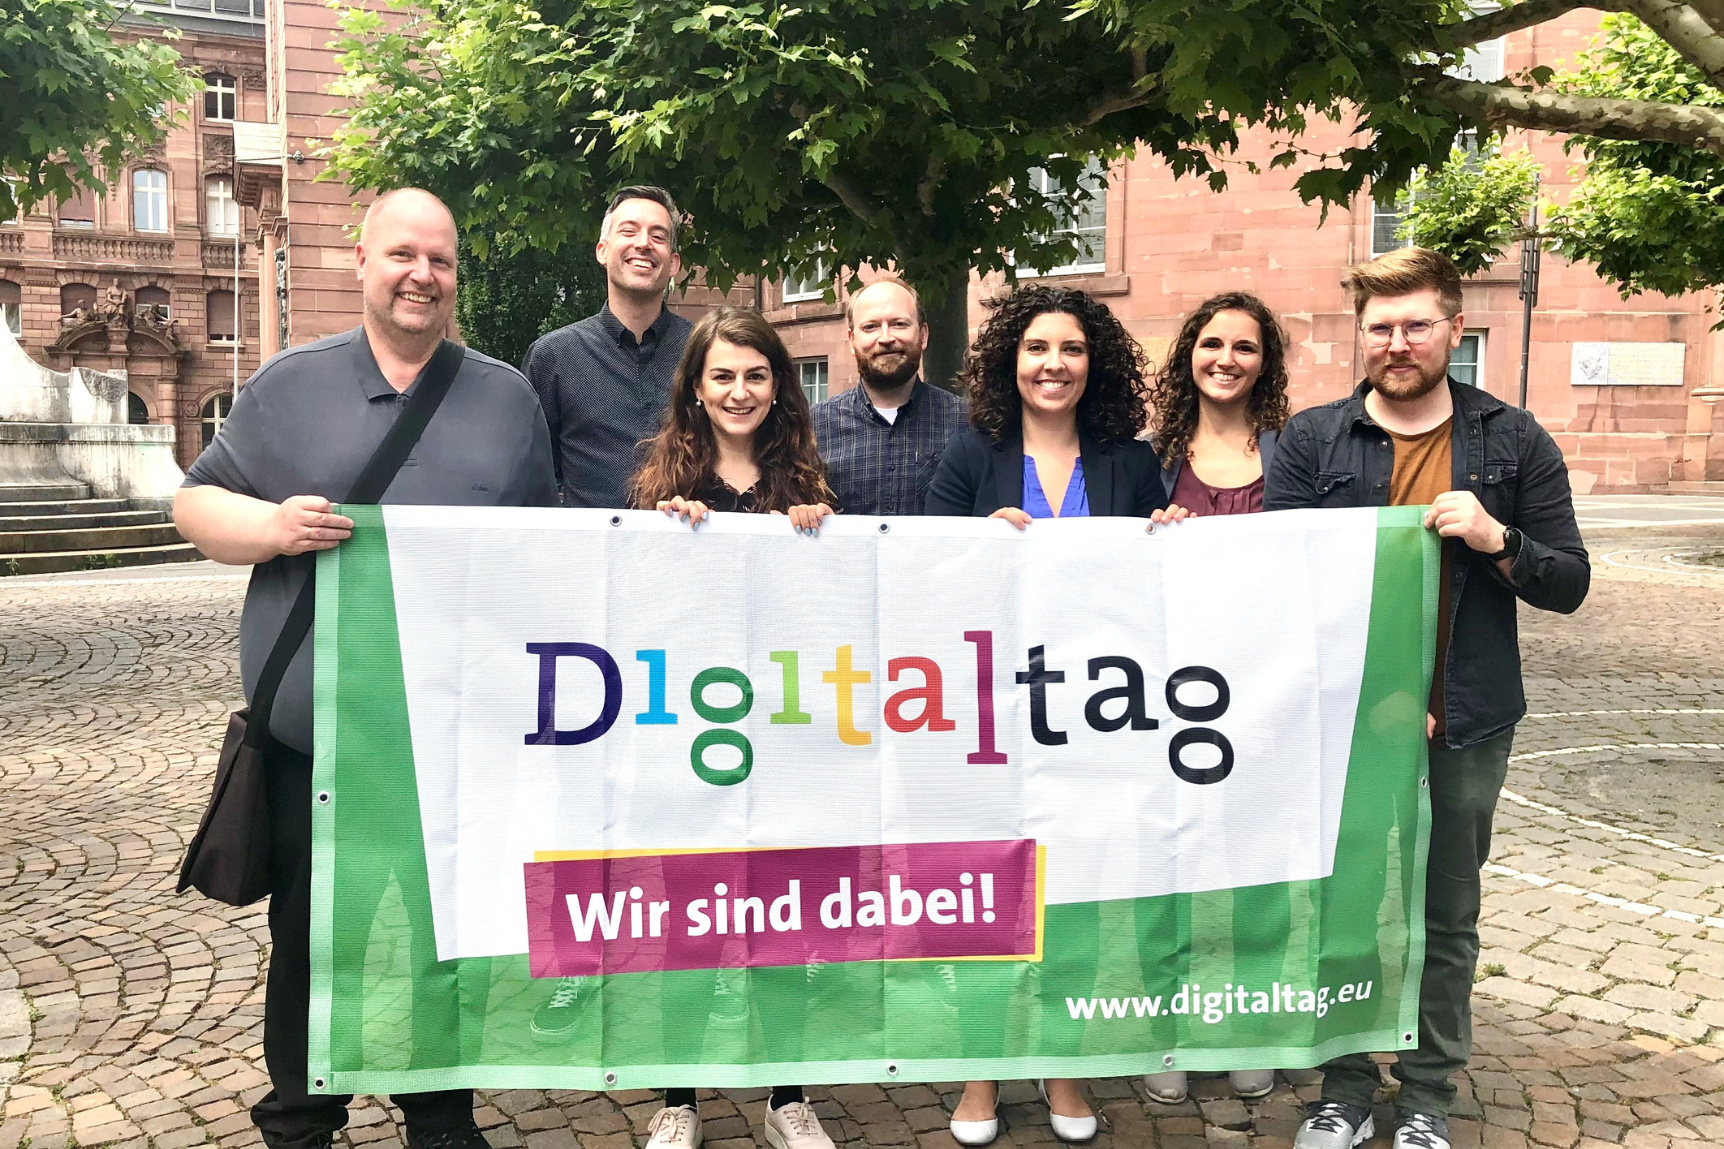 MItarbeiter und Mitarbeiterinnen der Stadt Frankfurt am Main halten ein Digitaltag-Banner hoch